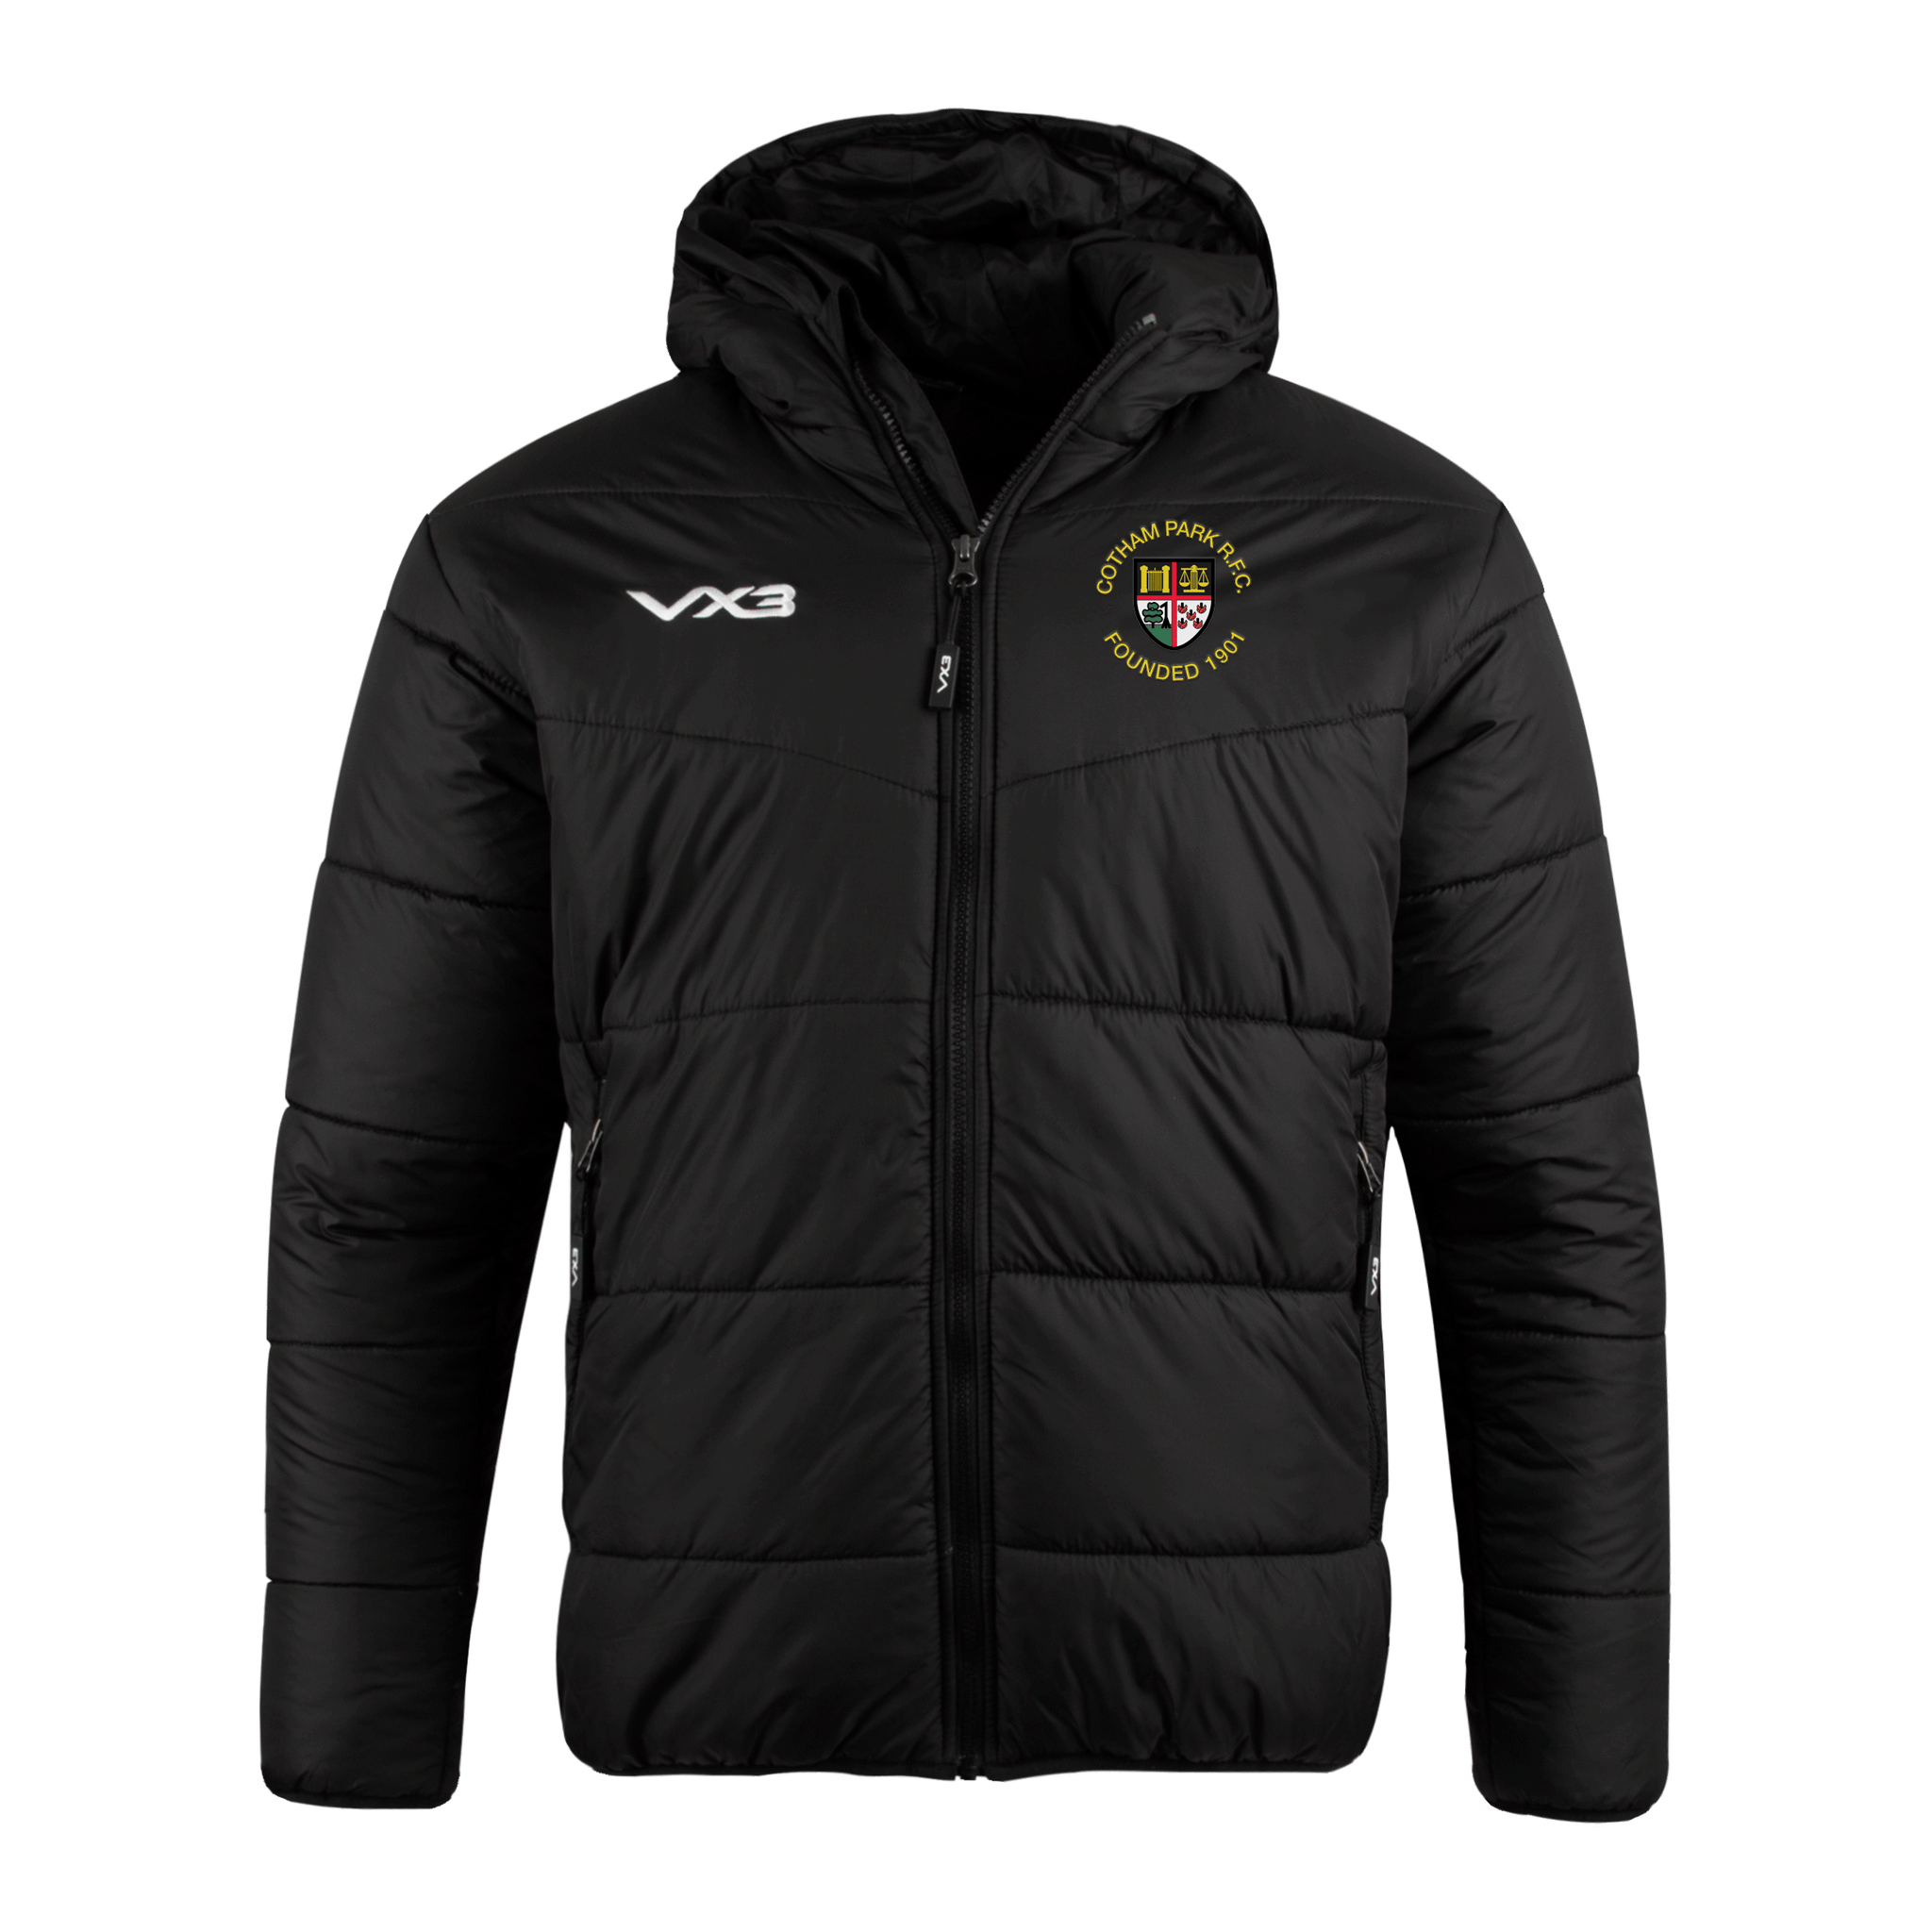 Cotham Park RFC Lorica Quilted Jacket Ladies